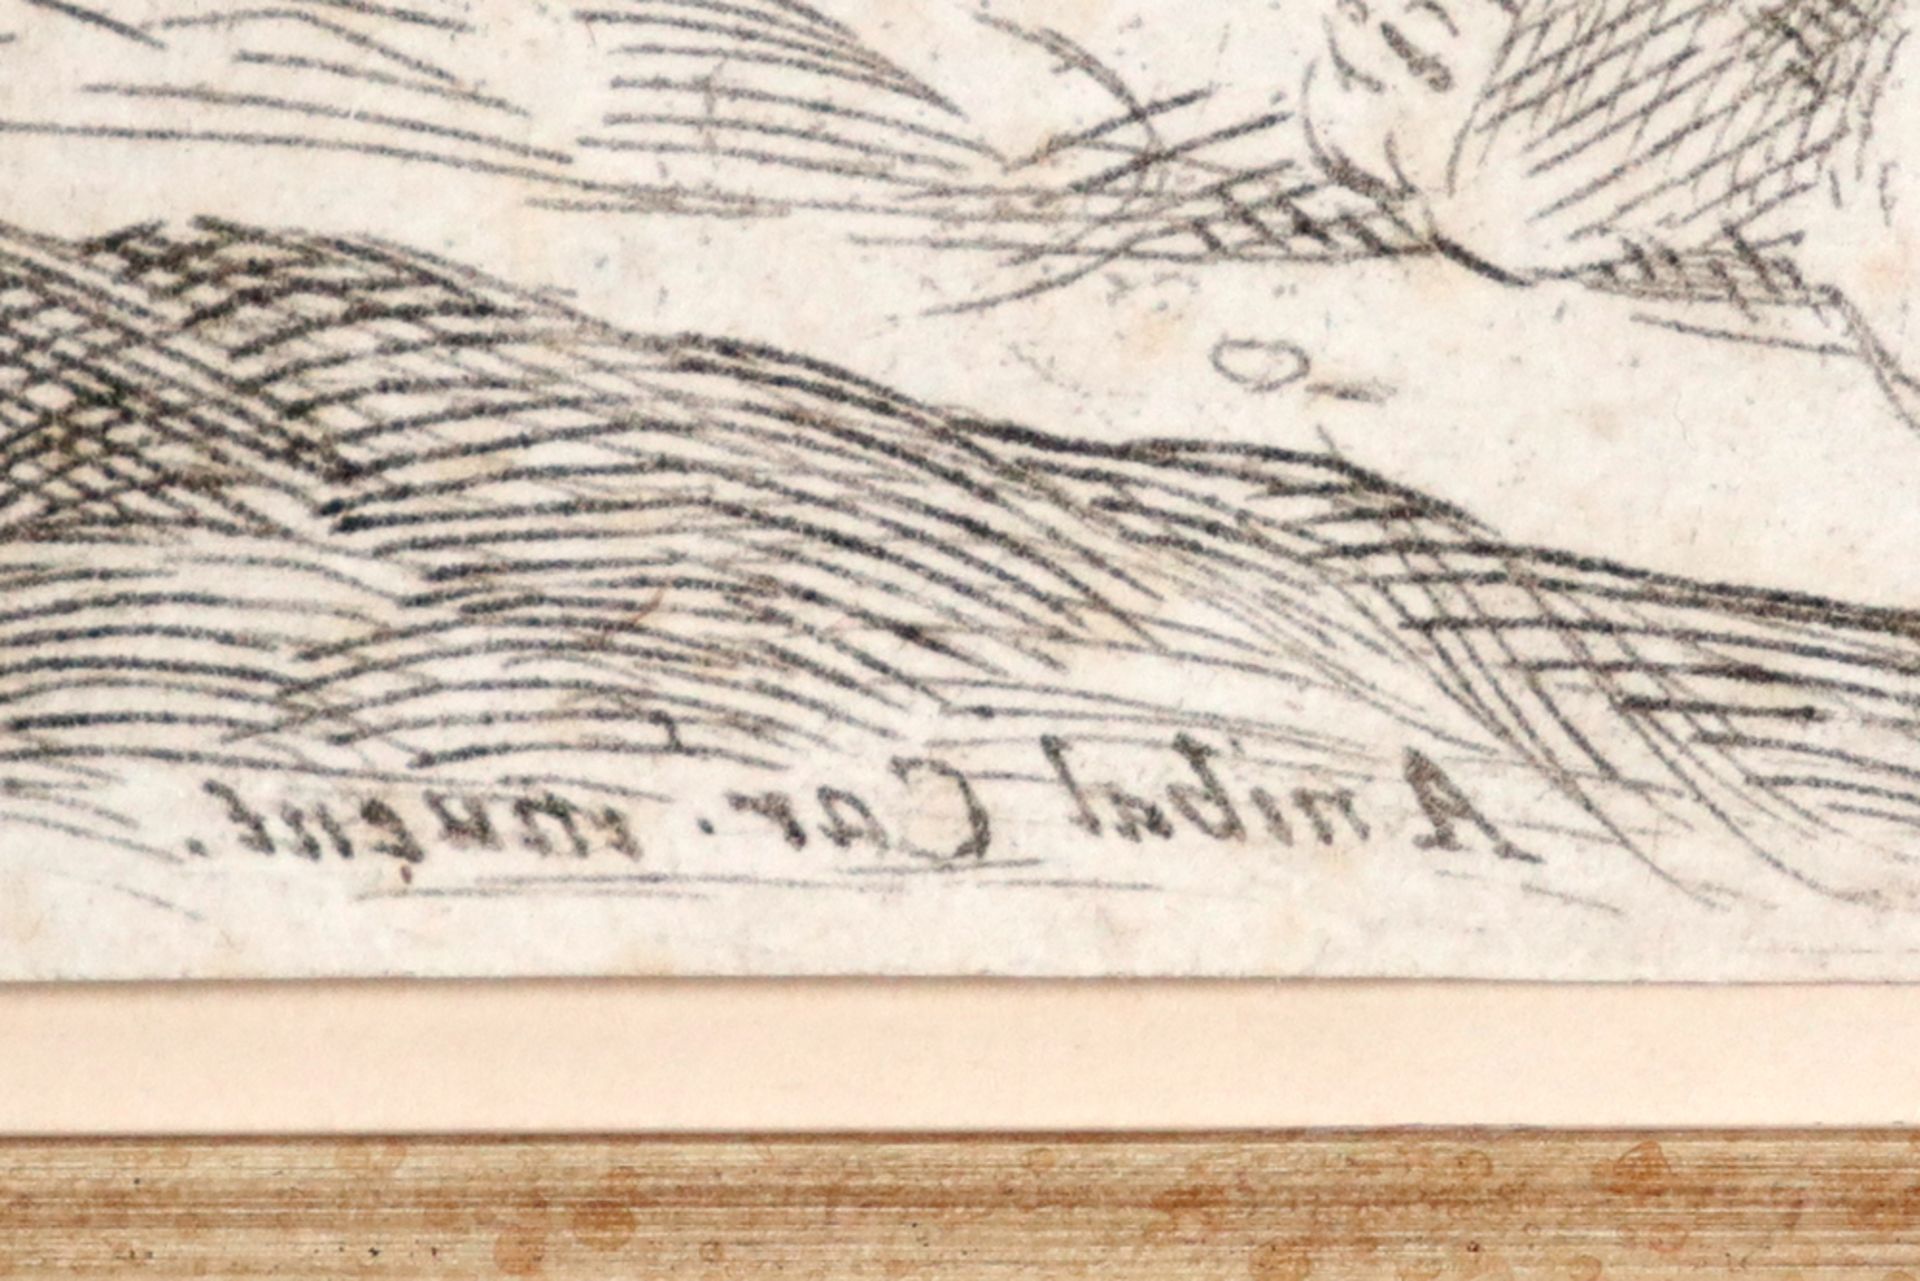 very rare 17th Cent. "contre épreuve" etching by Annibale Carracci & Francesco Brizio - with - Bild 2 aus 3